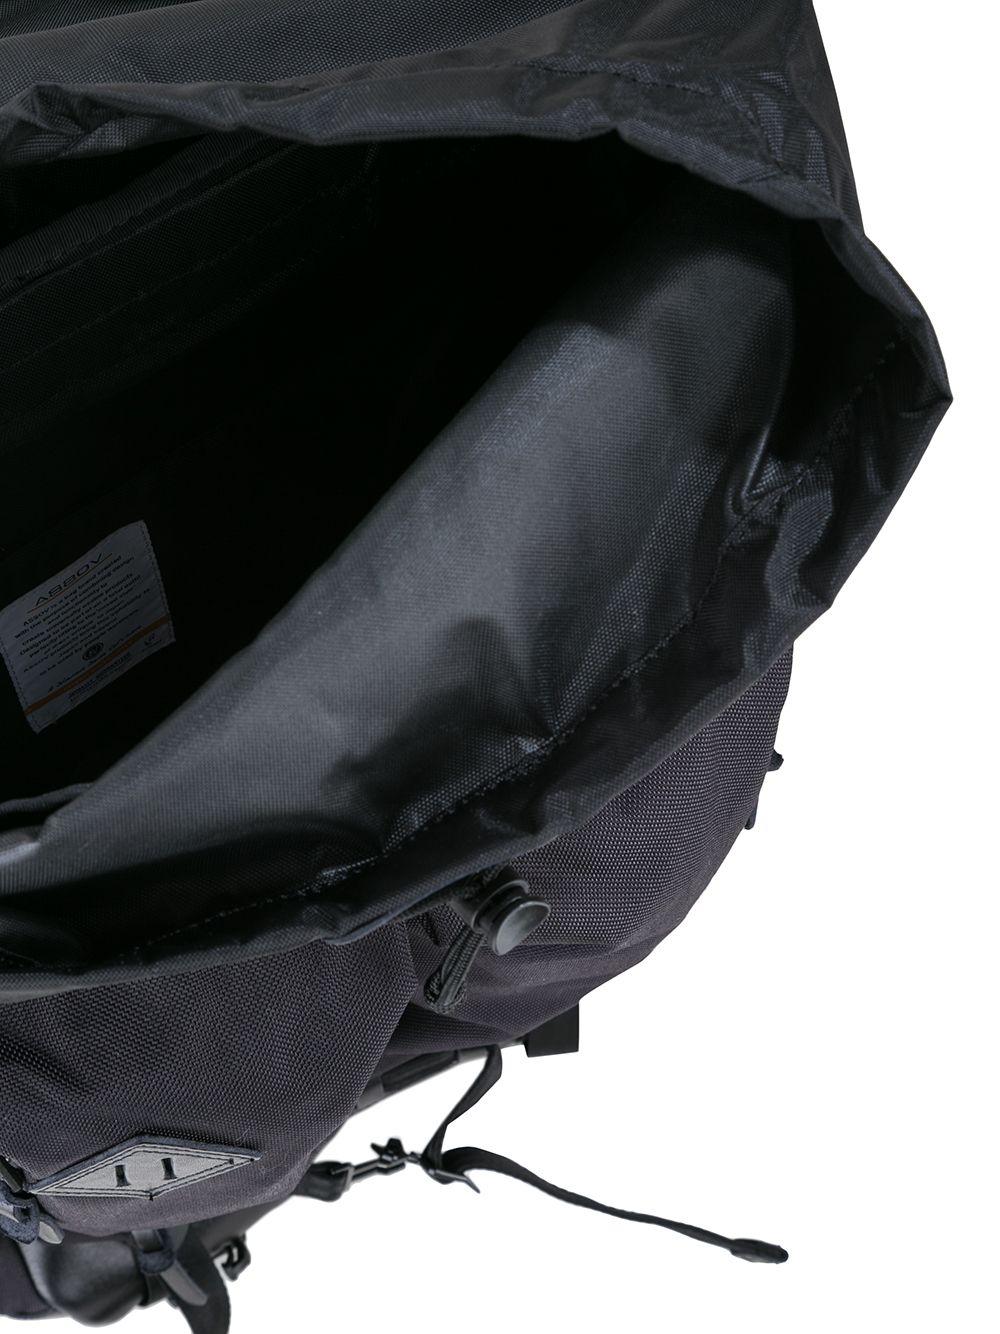 As2ov Ballistic Nylon 2pocket Backpack - Farfetch